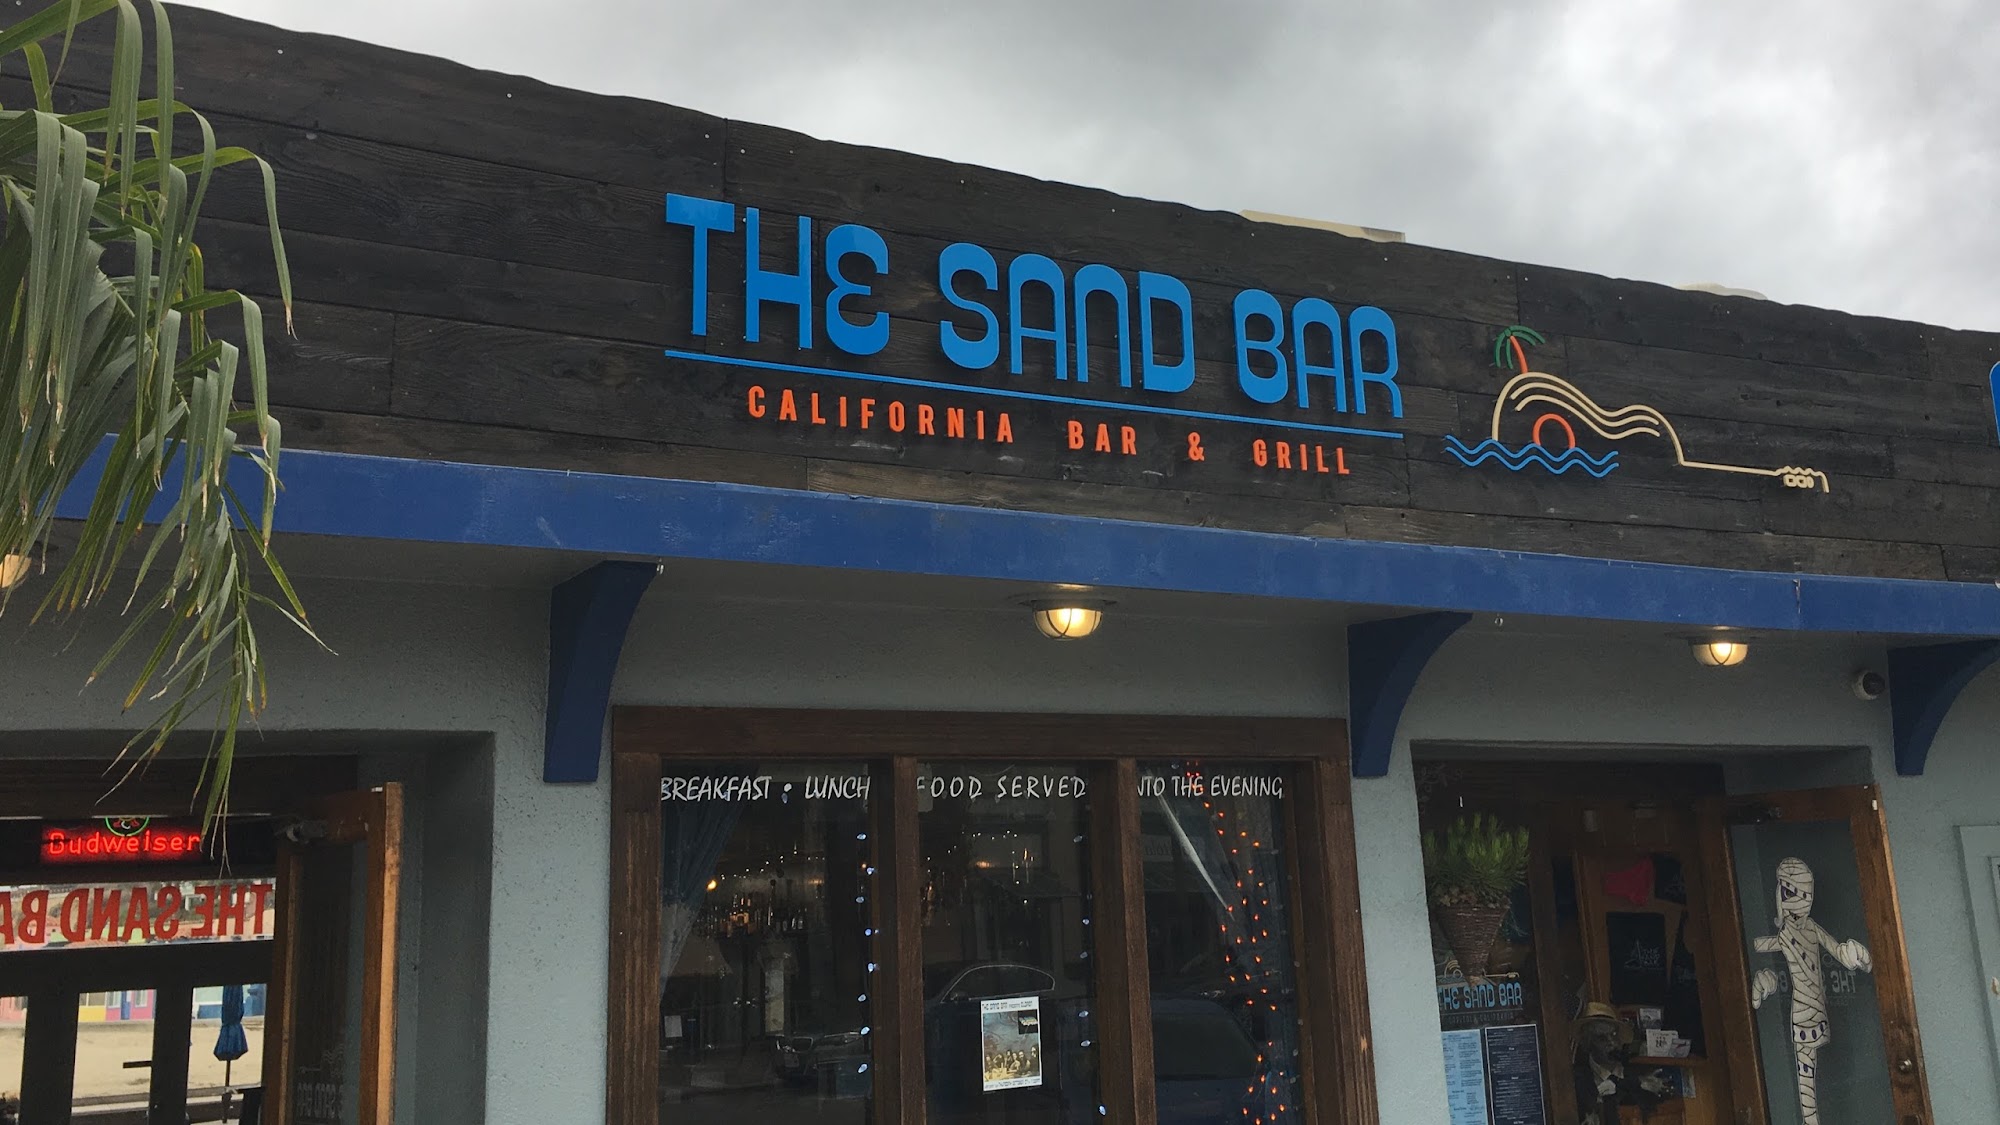 The Sand Bar Capitola